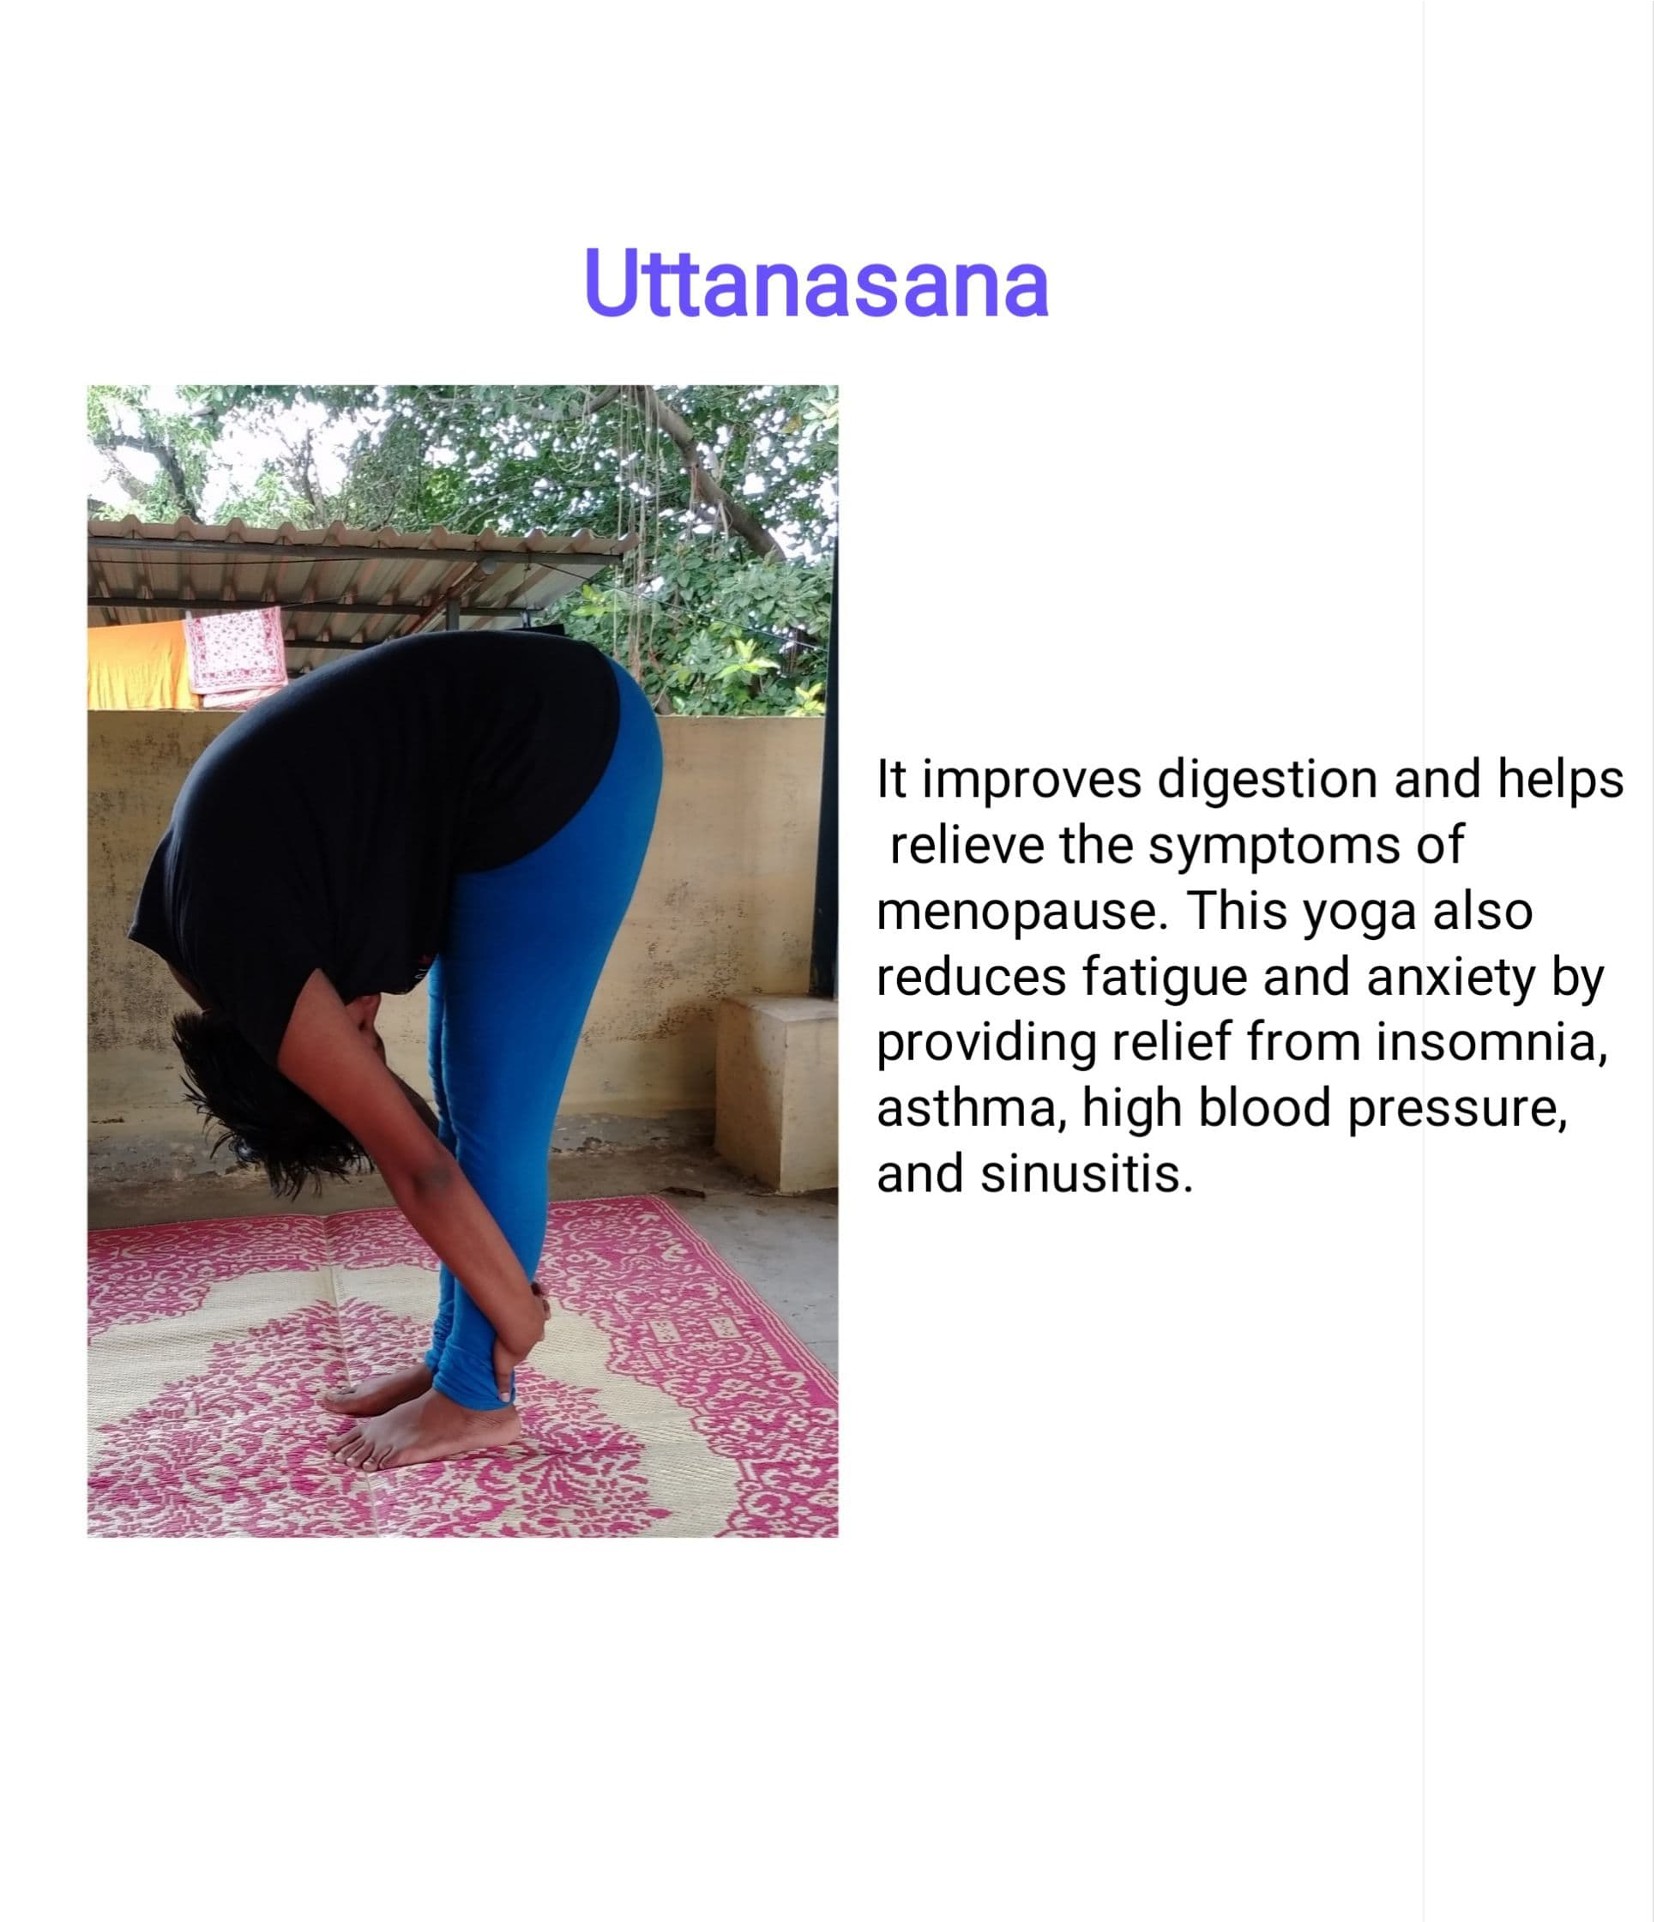 Vinyasa Yoga Ashram - Owner - Vinyasa Yoga Ashram | LinkedIn